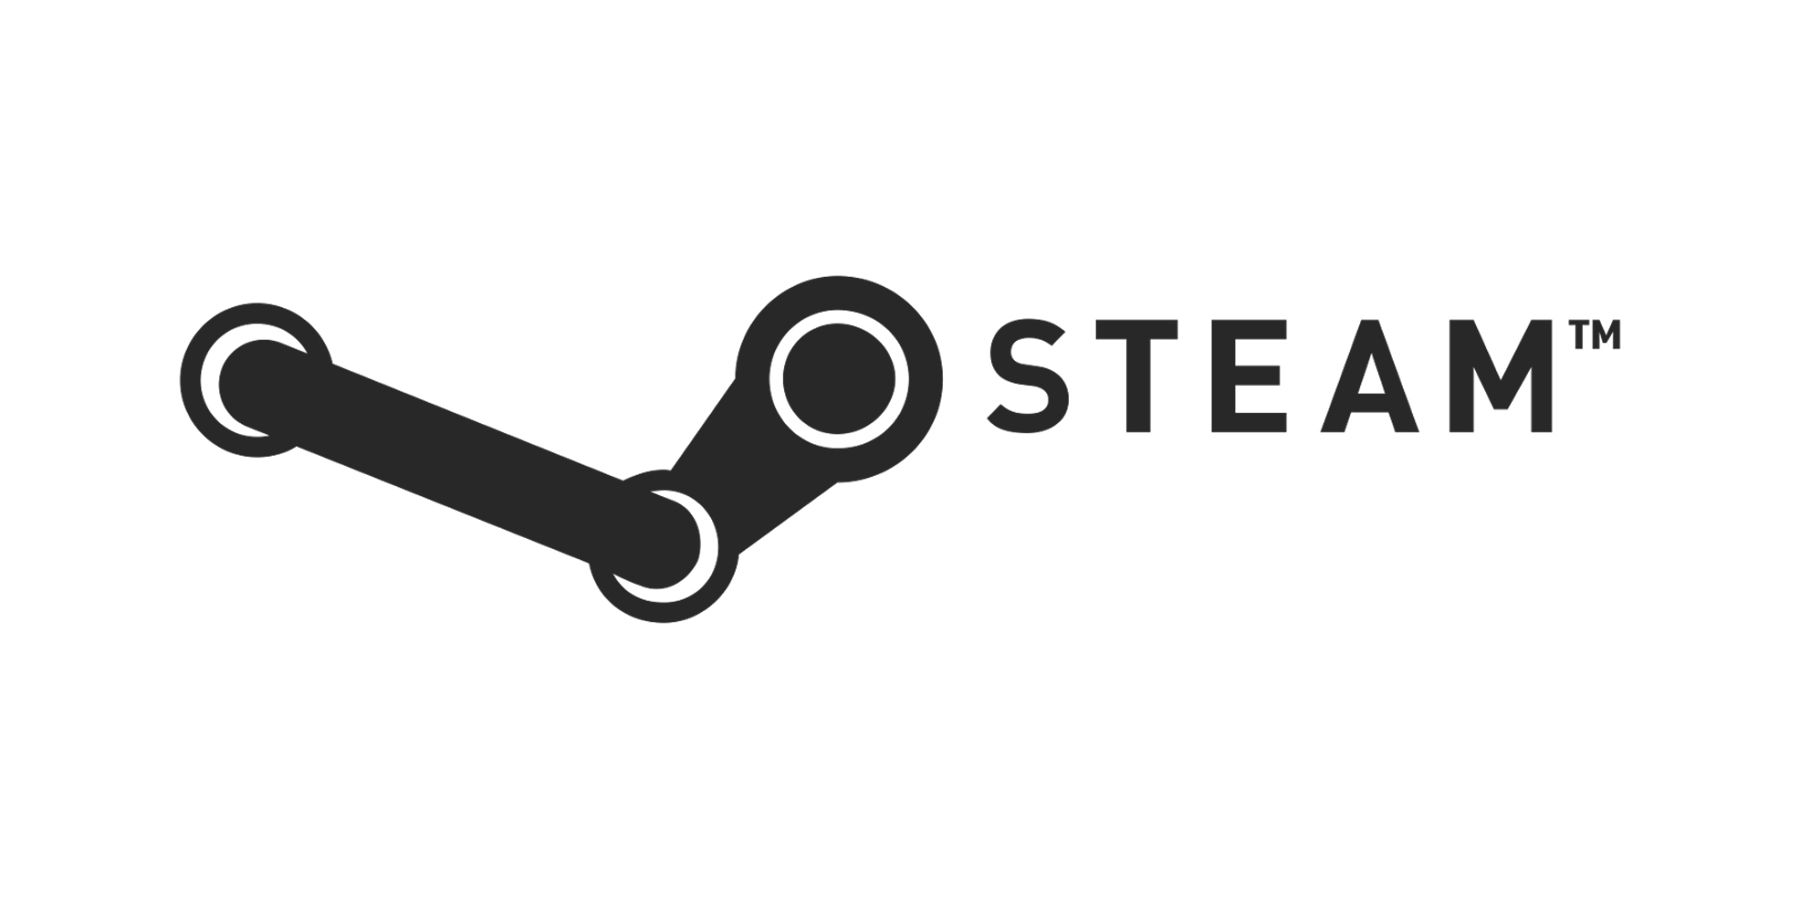 steam logo on white background